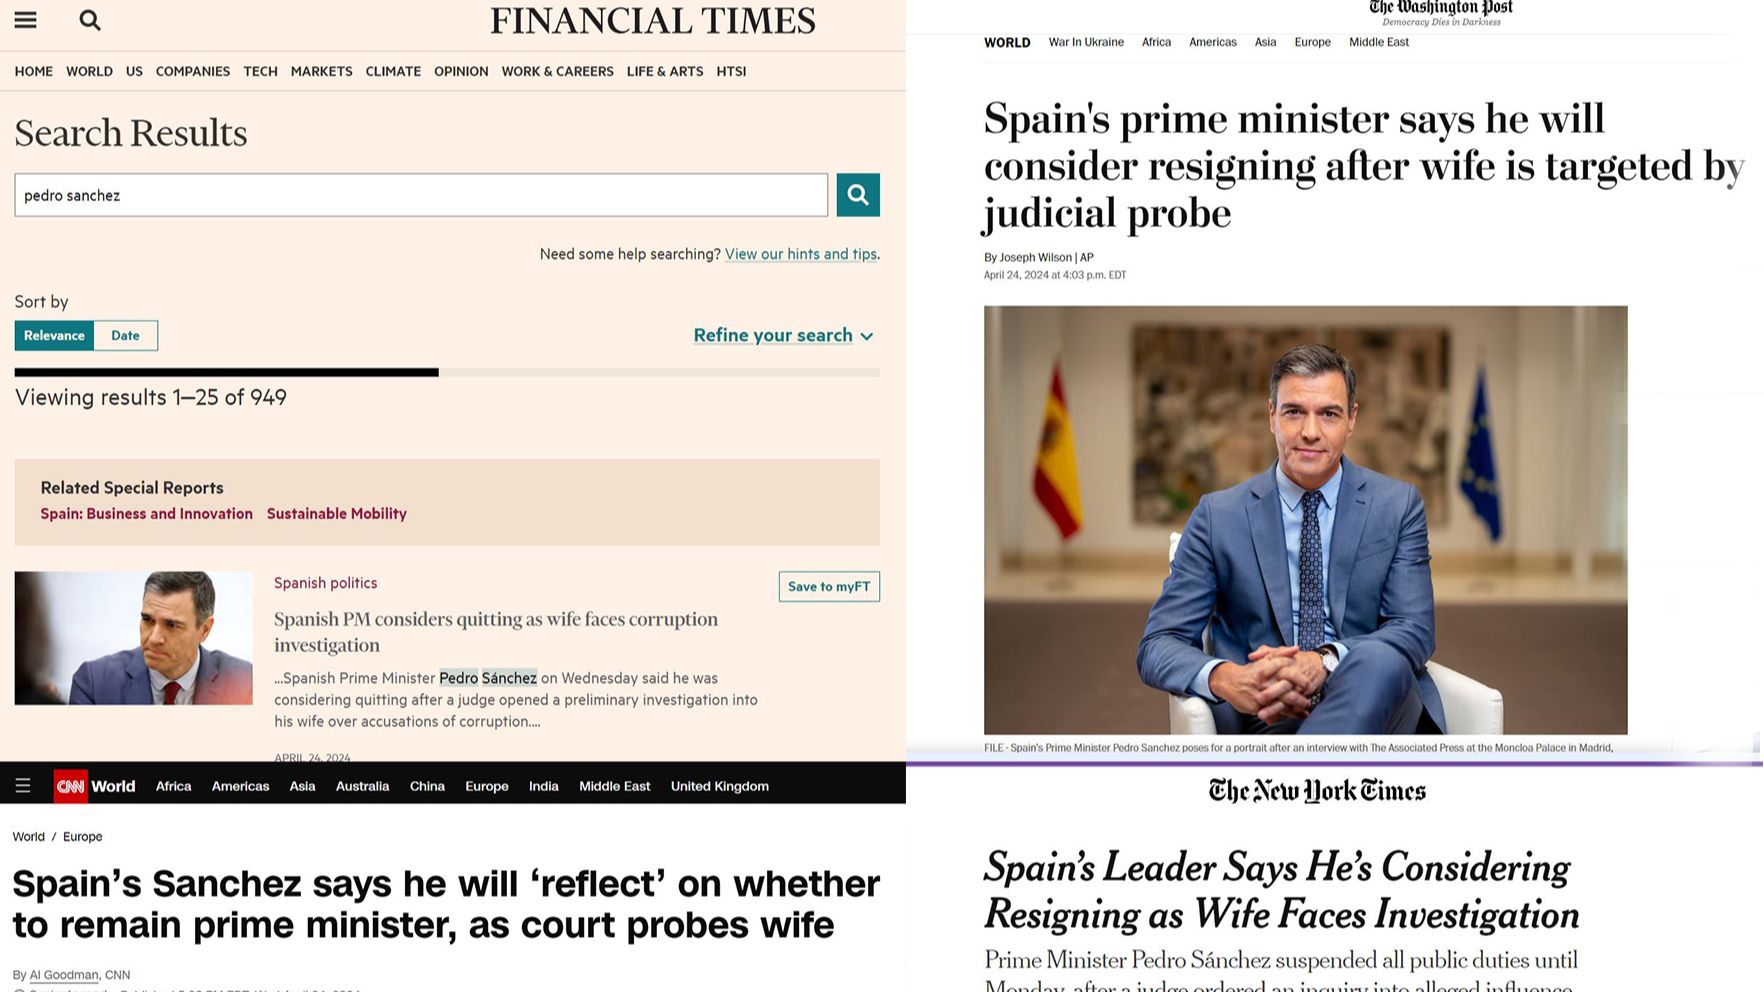 asi-ha-recogido-la-prensa-internacional-la-carta-de-pedro-sanchez:-“¿perdera-espana-a-su-presidente?”